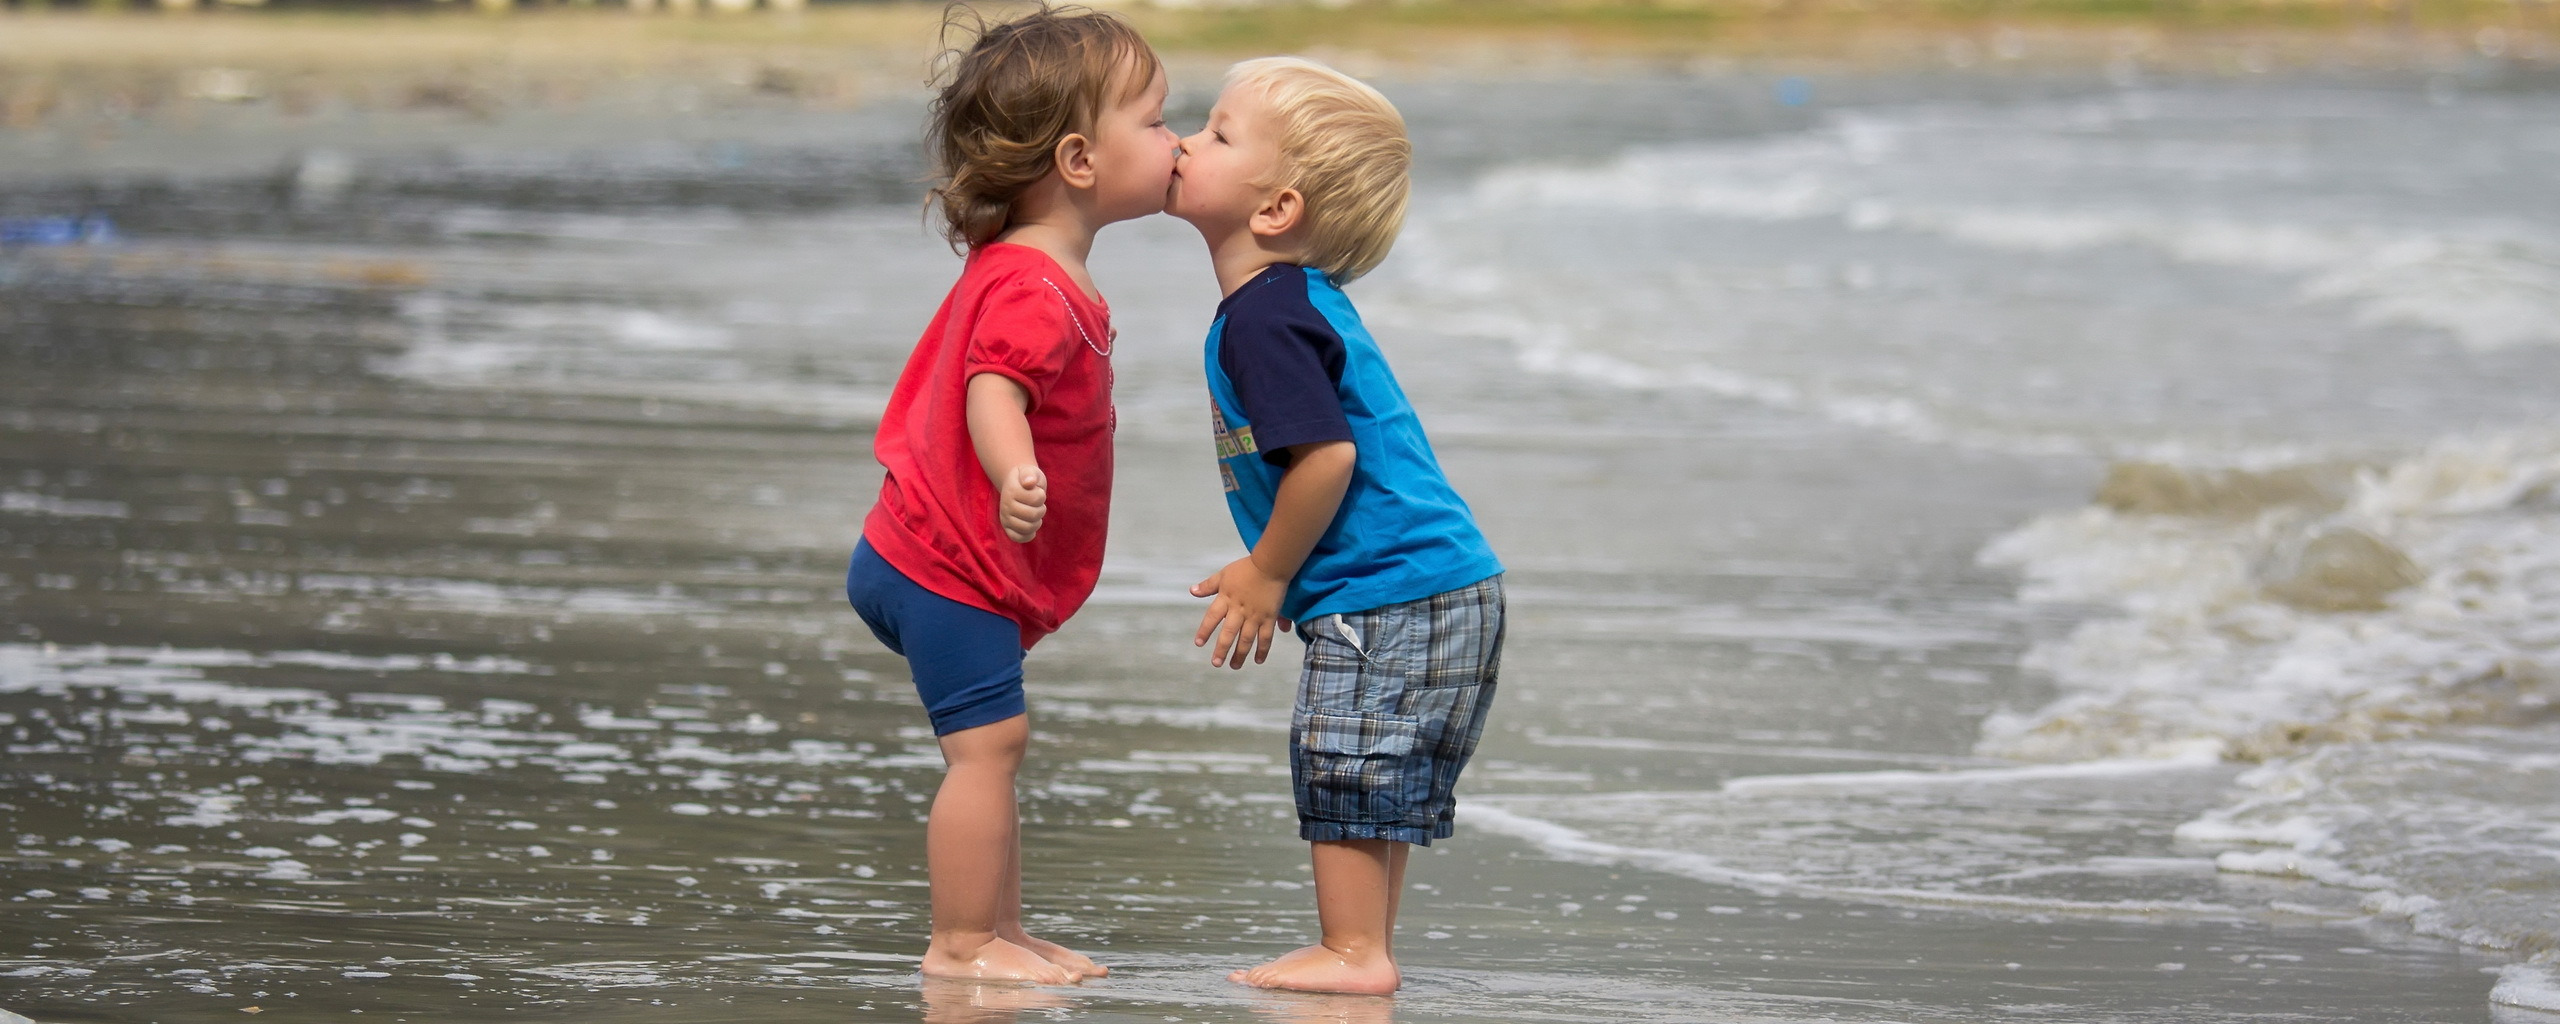 Любовь между детьми. Малыши целуются. Поцелуй картинка для детей. Детский поцелуй на пляже. Большая девочка большой мальчик целуется